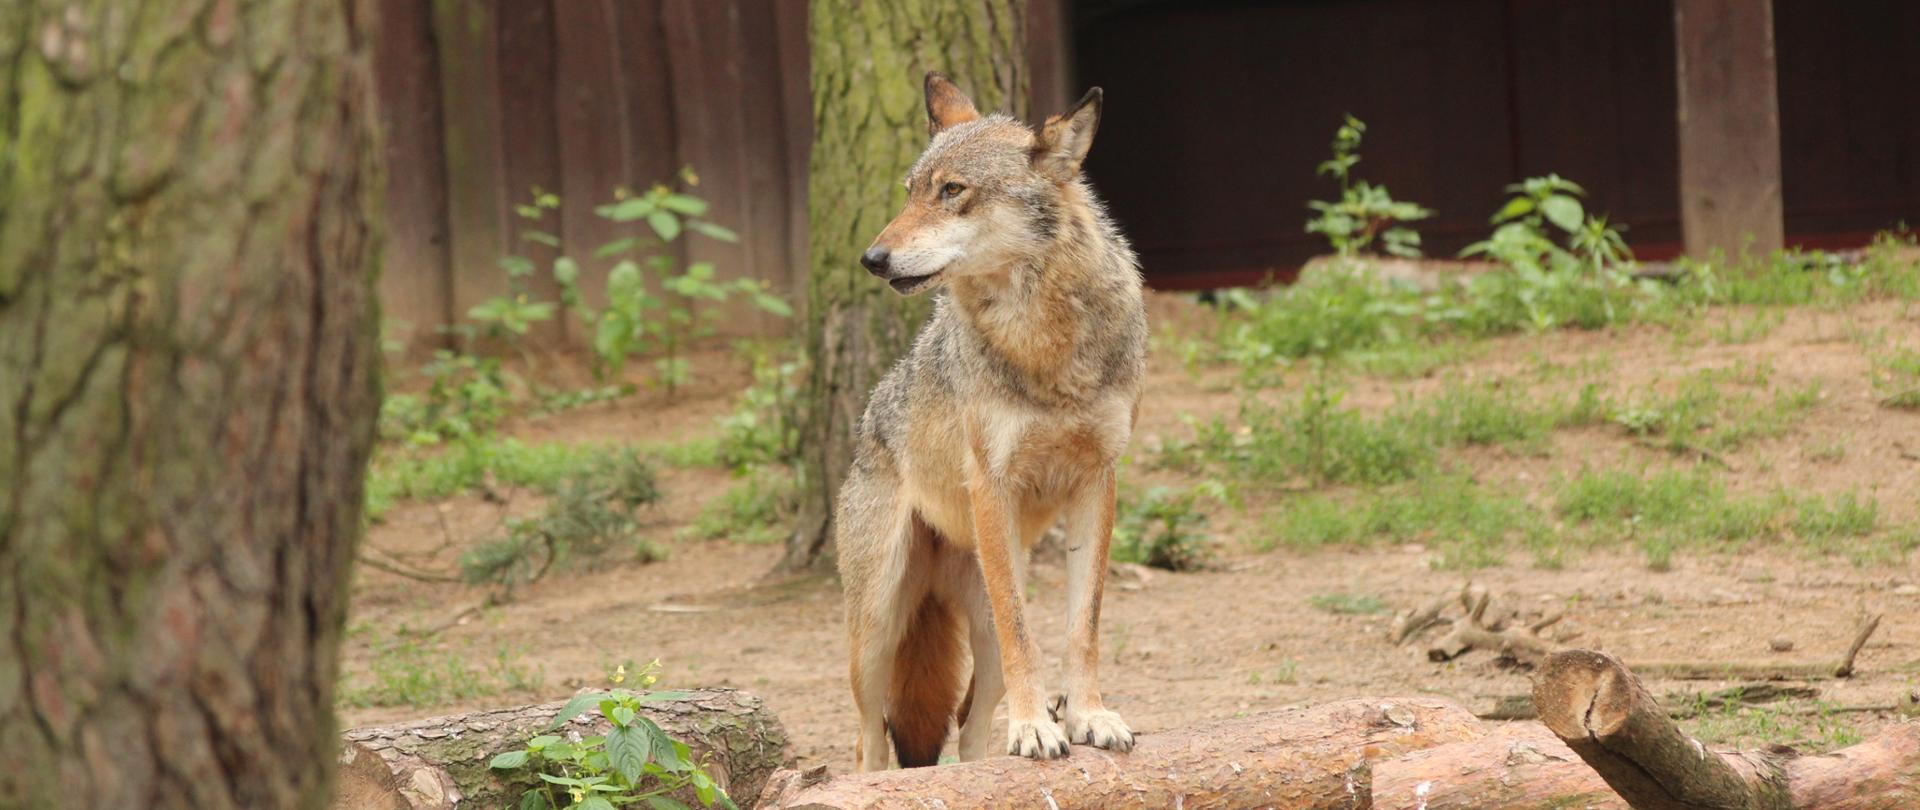 Wilk szary Canis lupus opiera się przednimi łapami o pień ściętego drzewa